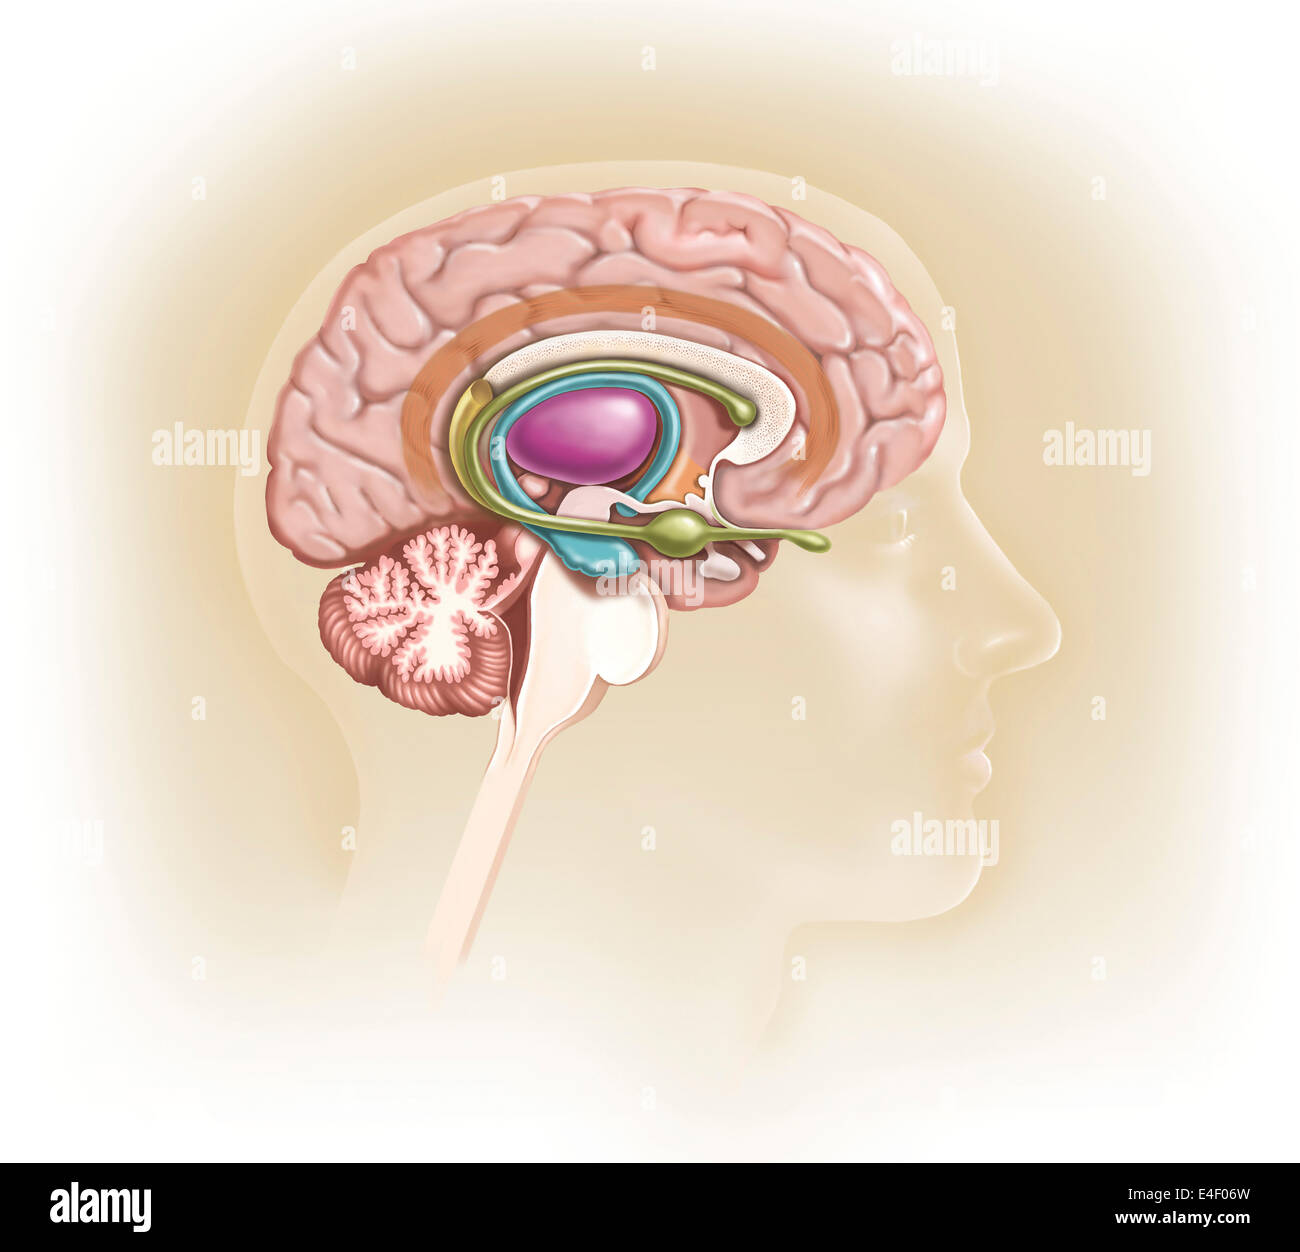 Vista sagittale del cervello umano che mostra il sistema limbico. Foto Stock